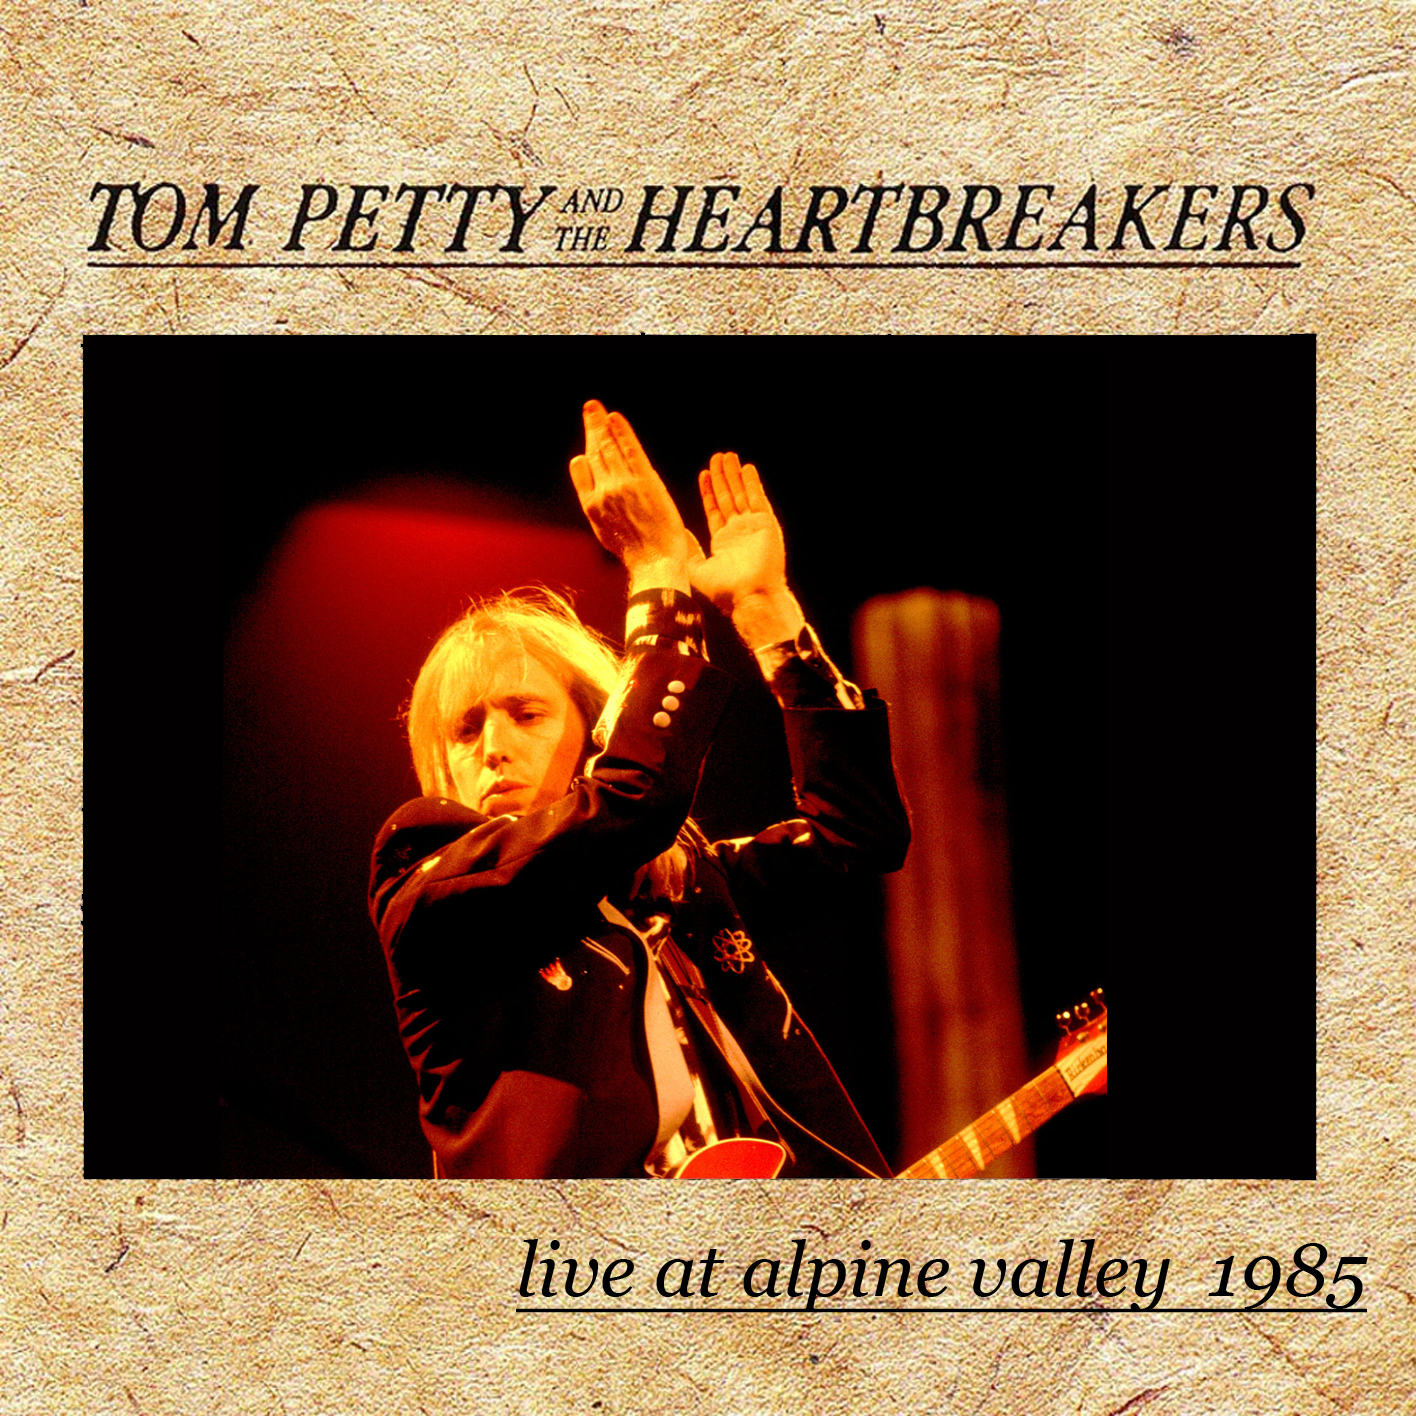 TomPettyAndTheHeartbreakers1985-06-23AlpineValleyMusicTheaterEastTroyWI (2).jpg